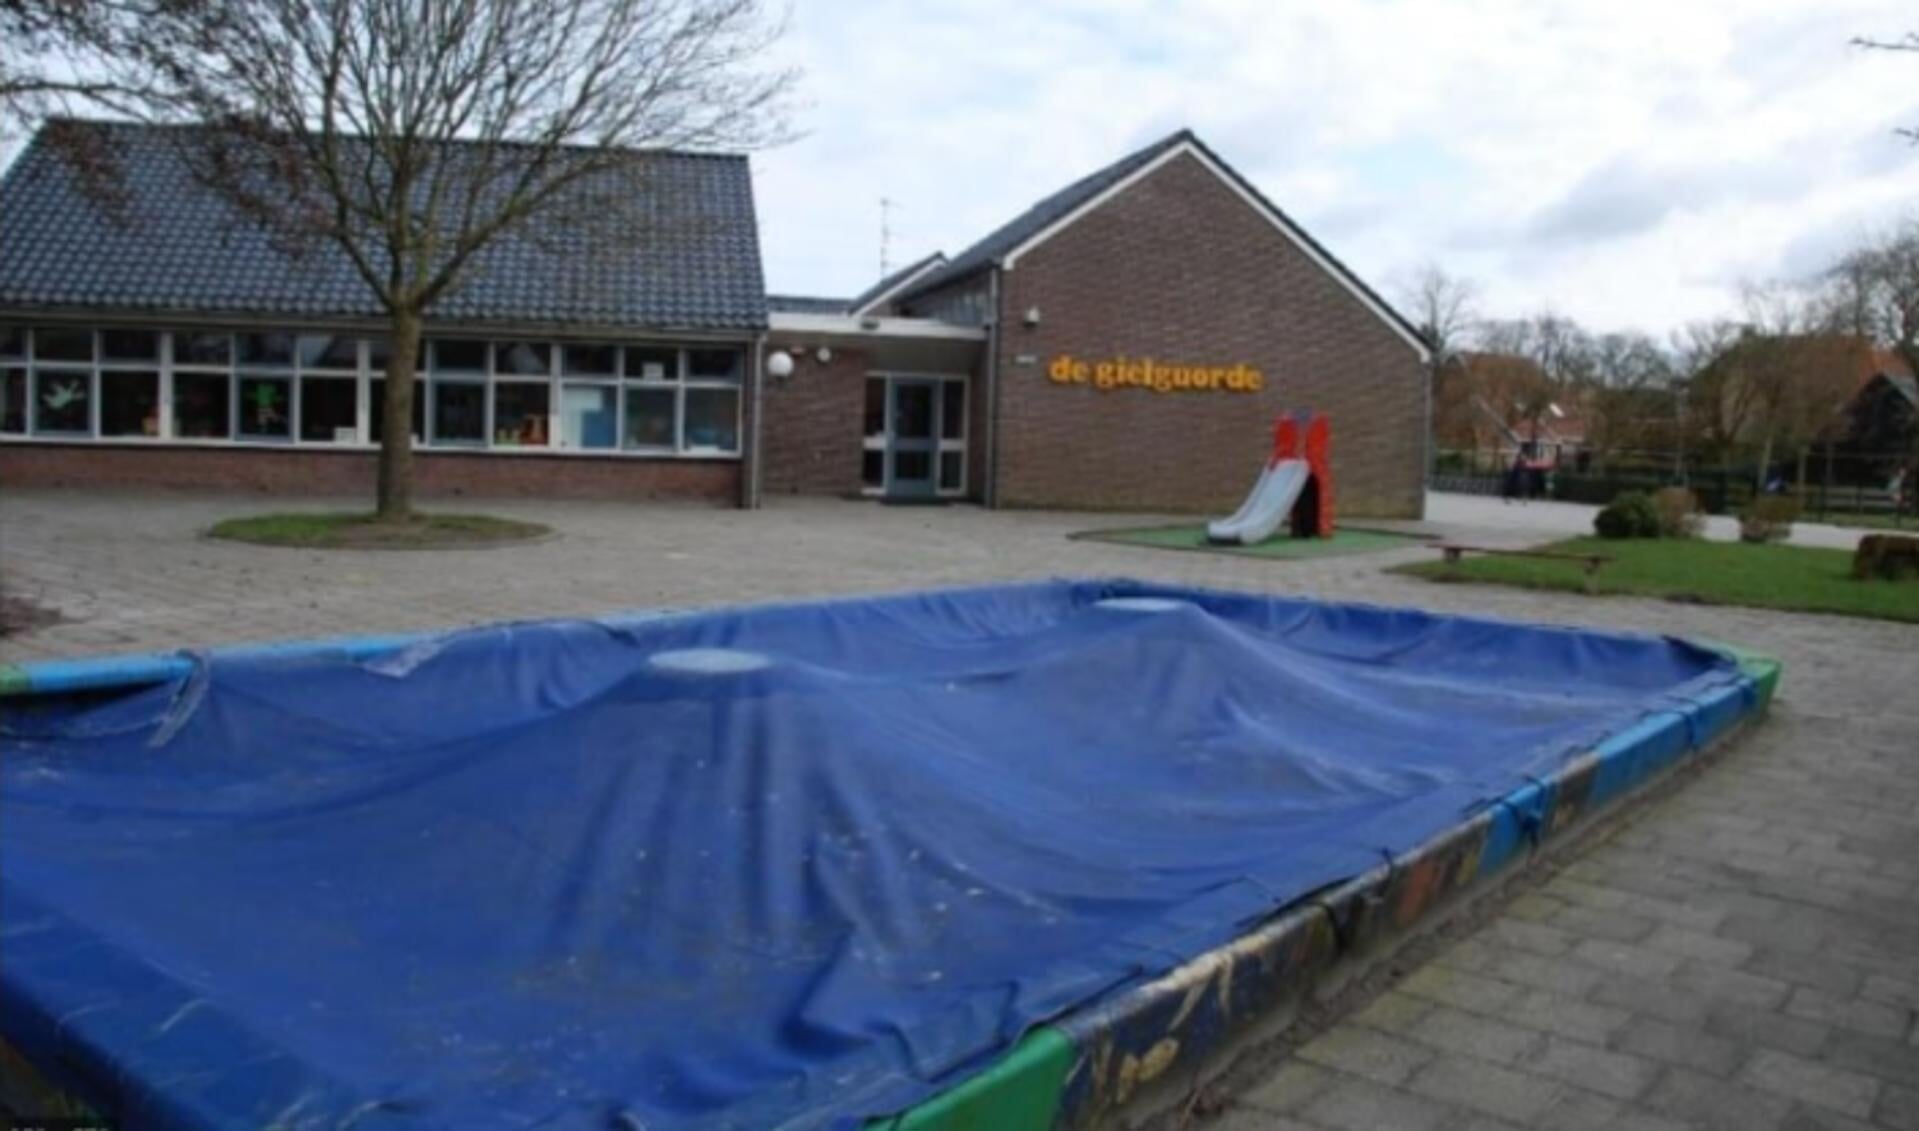 Dit is één van de Friese basisscholen die maandag 15 februari gesloten is vanwege de verwachte gladheid op de wegen.